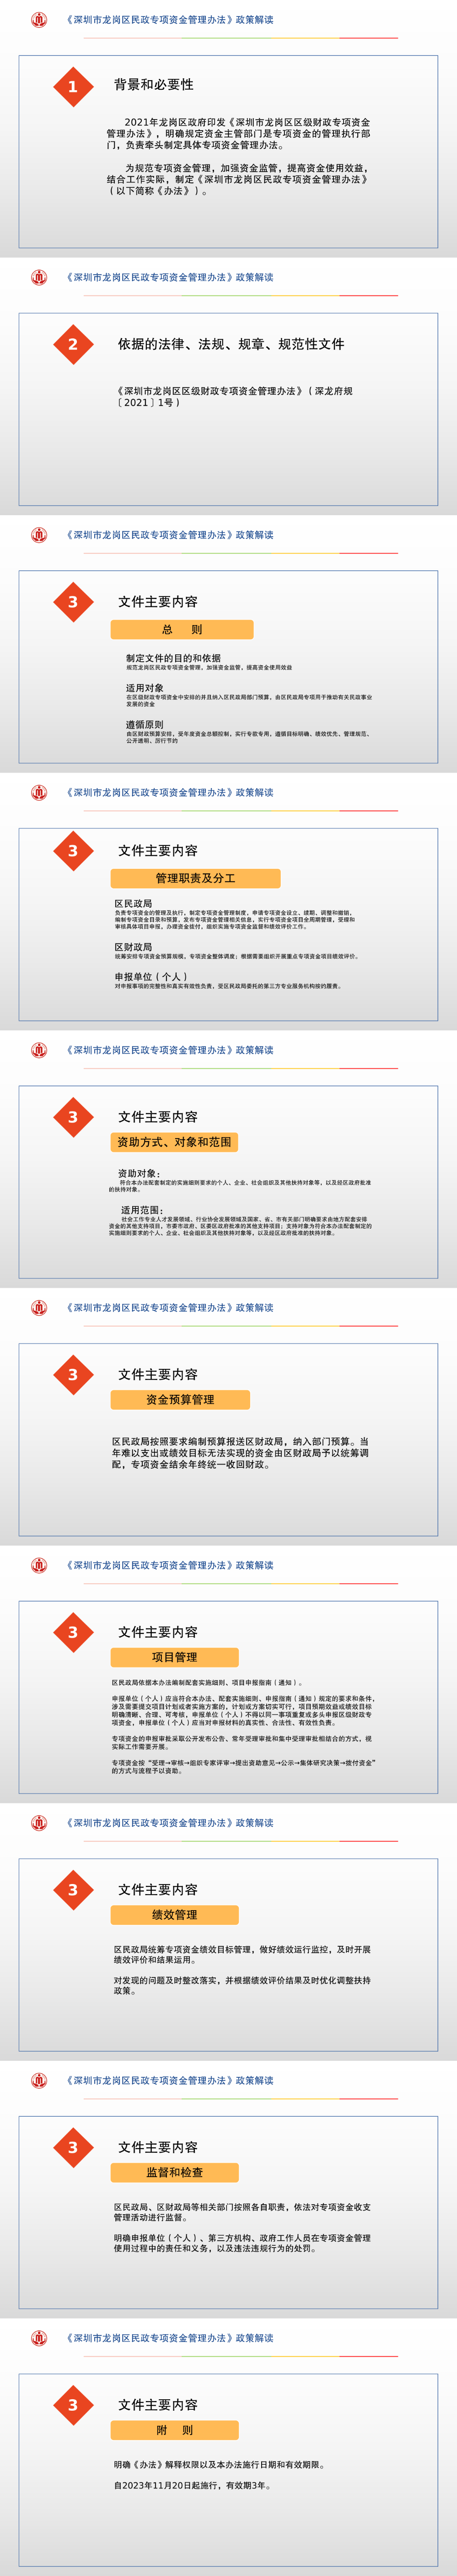 《深圳市龙岗区民政专项资金管理办法》政策解读.png